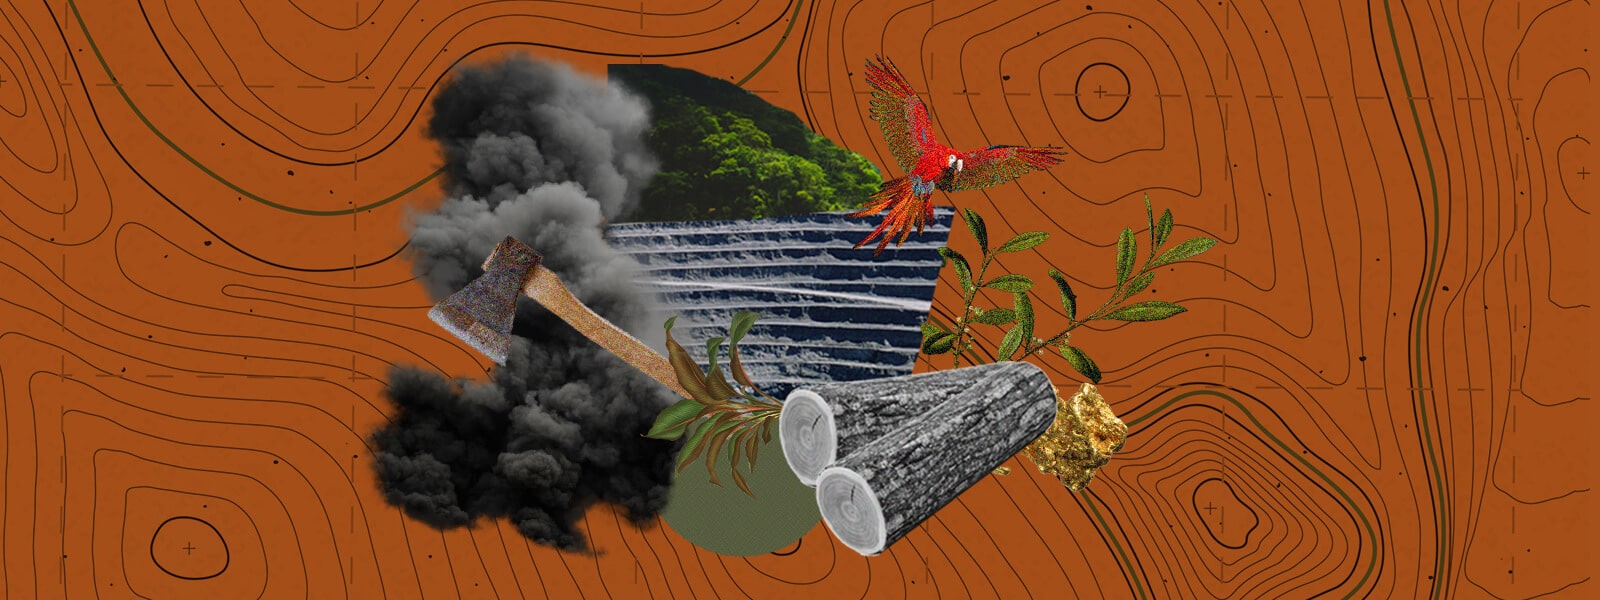 Ilustración con troncos de madera, fauna, un hacha y humo